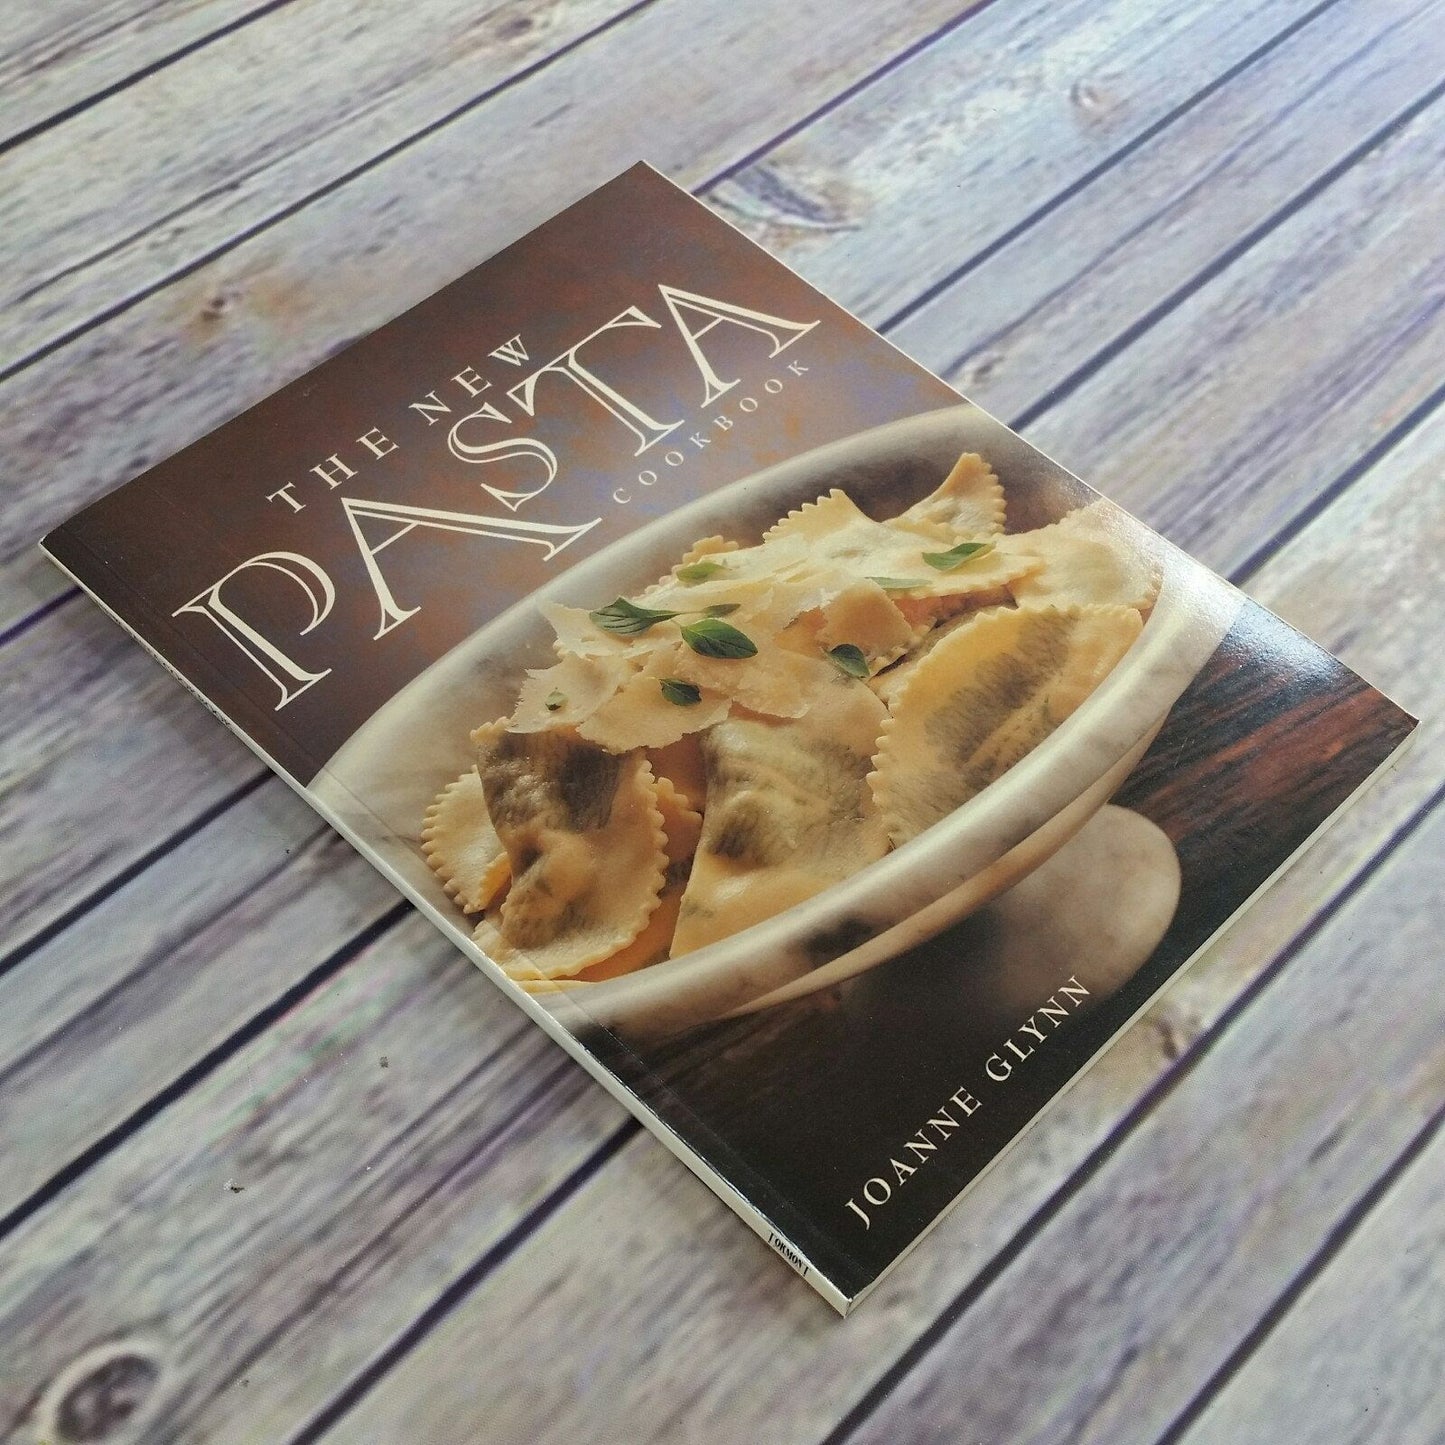 Vintage Cookbook The New Pasta Cookbook Recipes 1993 Joanne Glynn Paperback